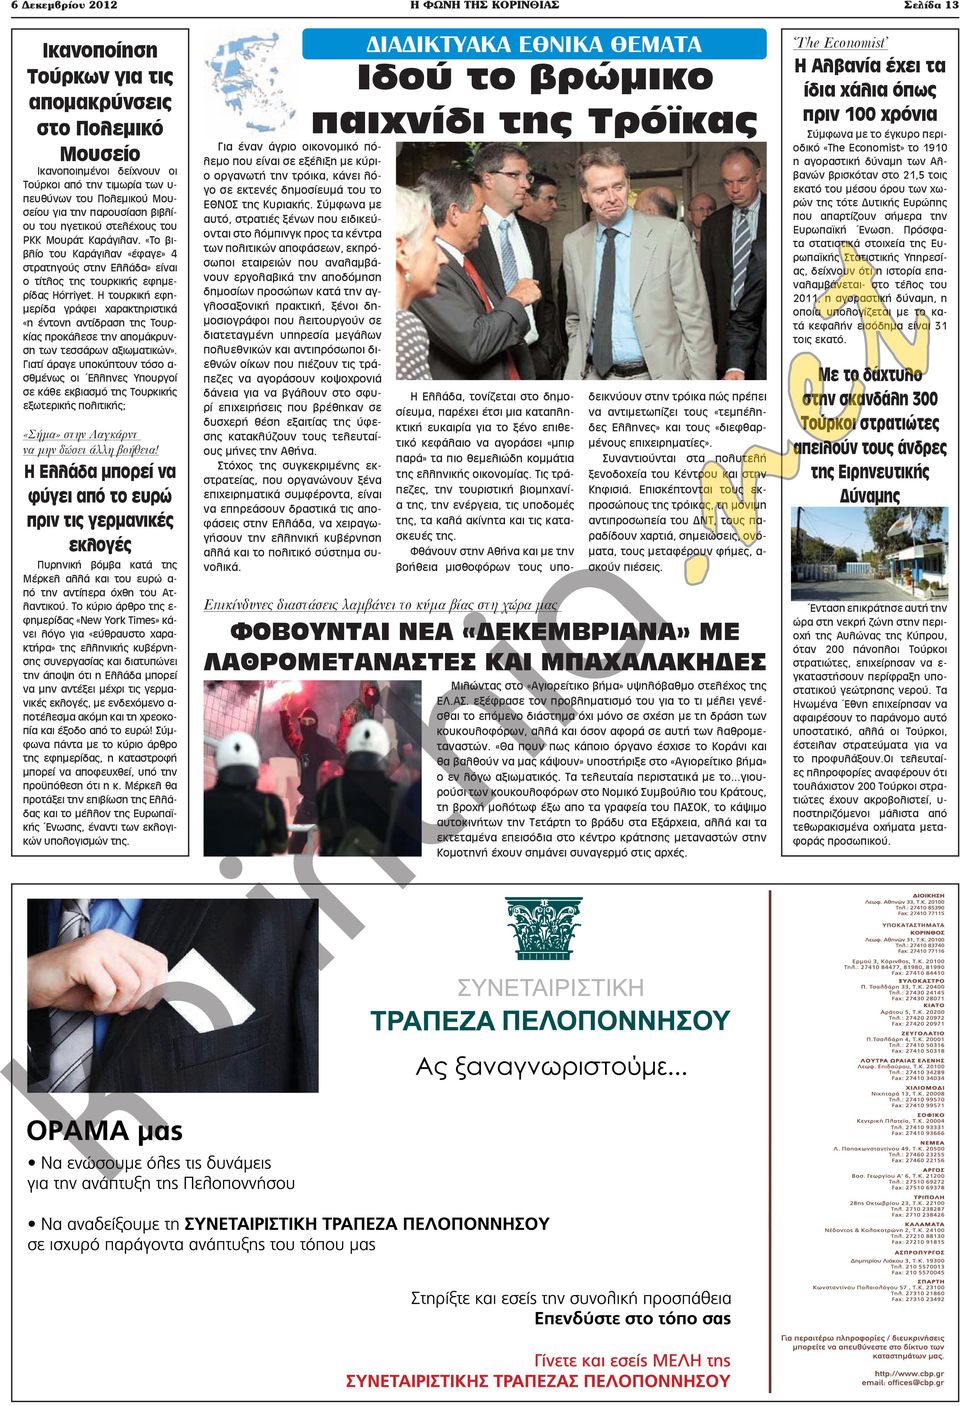 «Το βιβλίο του Καράγιλαν «έφαγε» 4 στρατηγούς στην Ελλάδα» είναι ο τίτλος της τουρκικής εφημερίδας Hürriye.